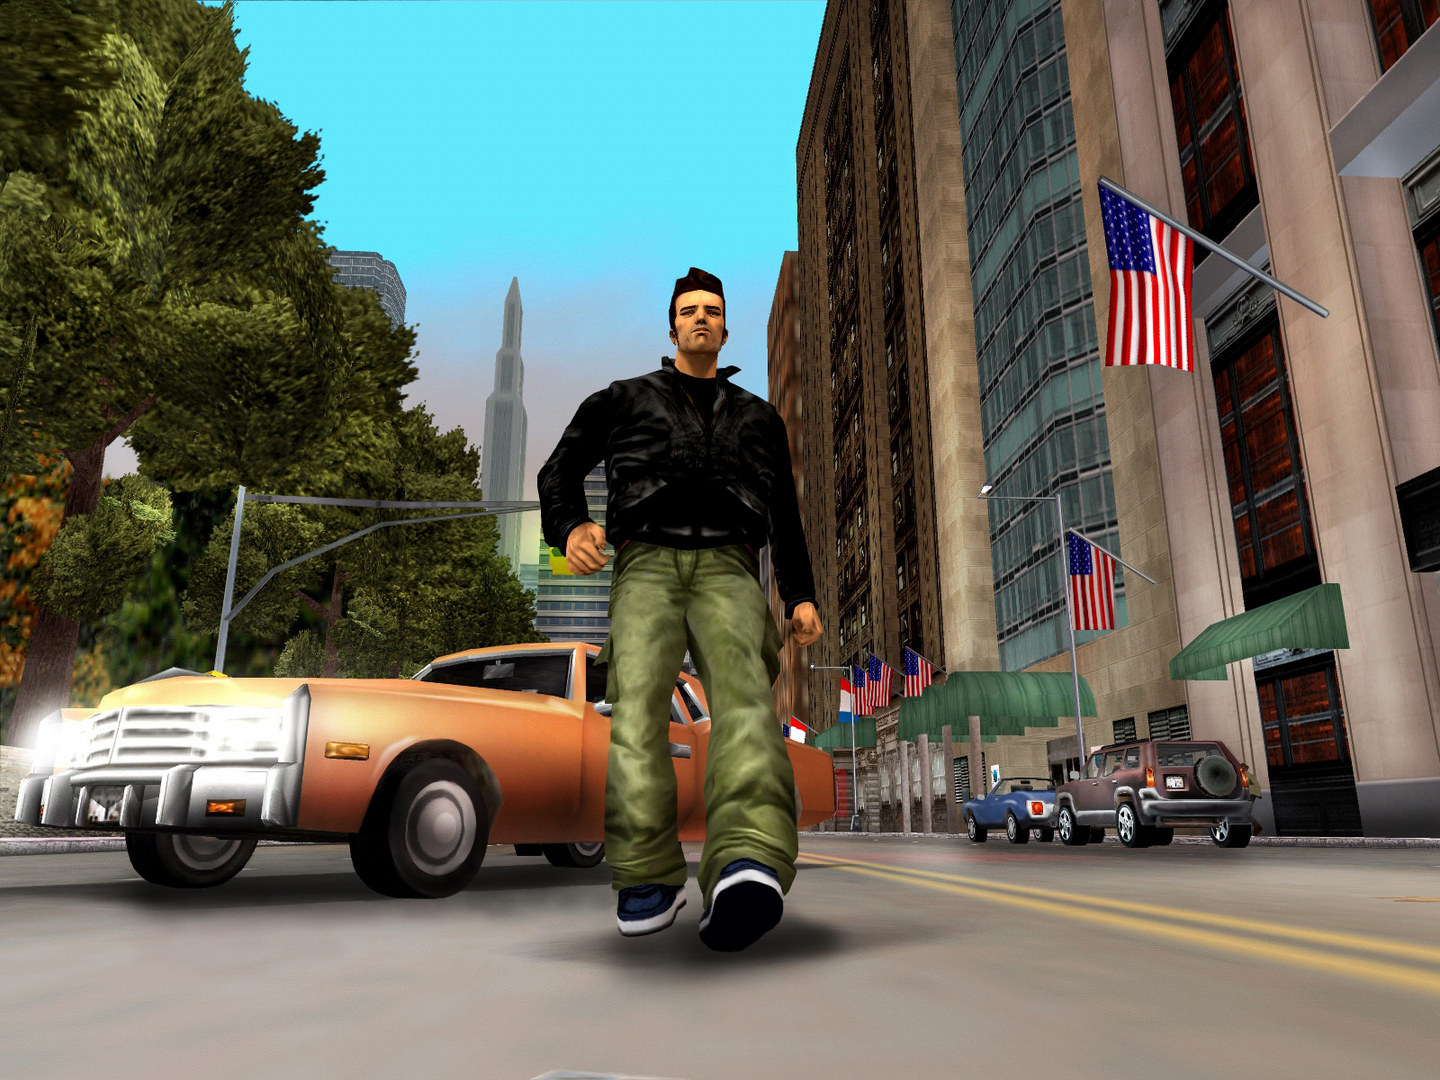 Trò chơi lấy bối cảnh ở Liberty City, thành phố hư cấu dựa trên New York